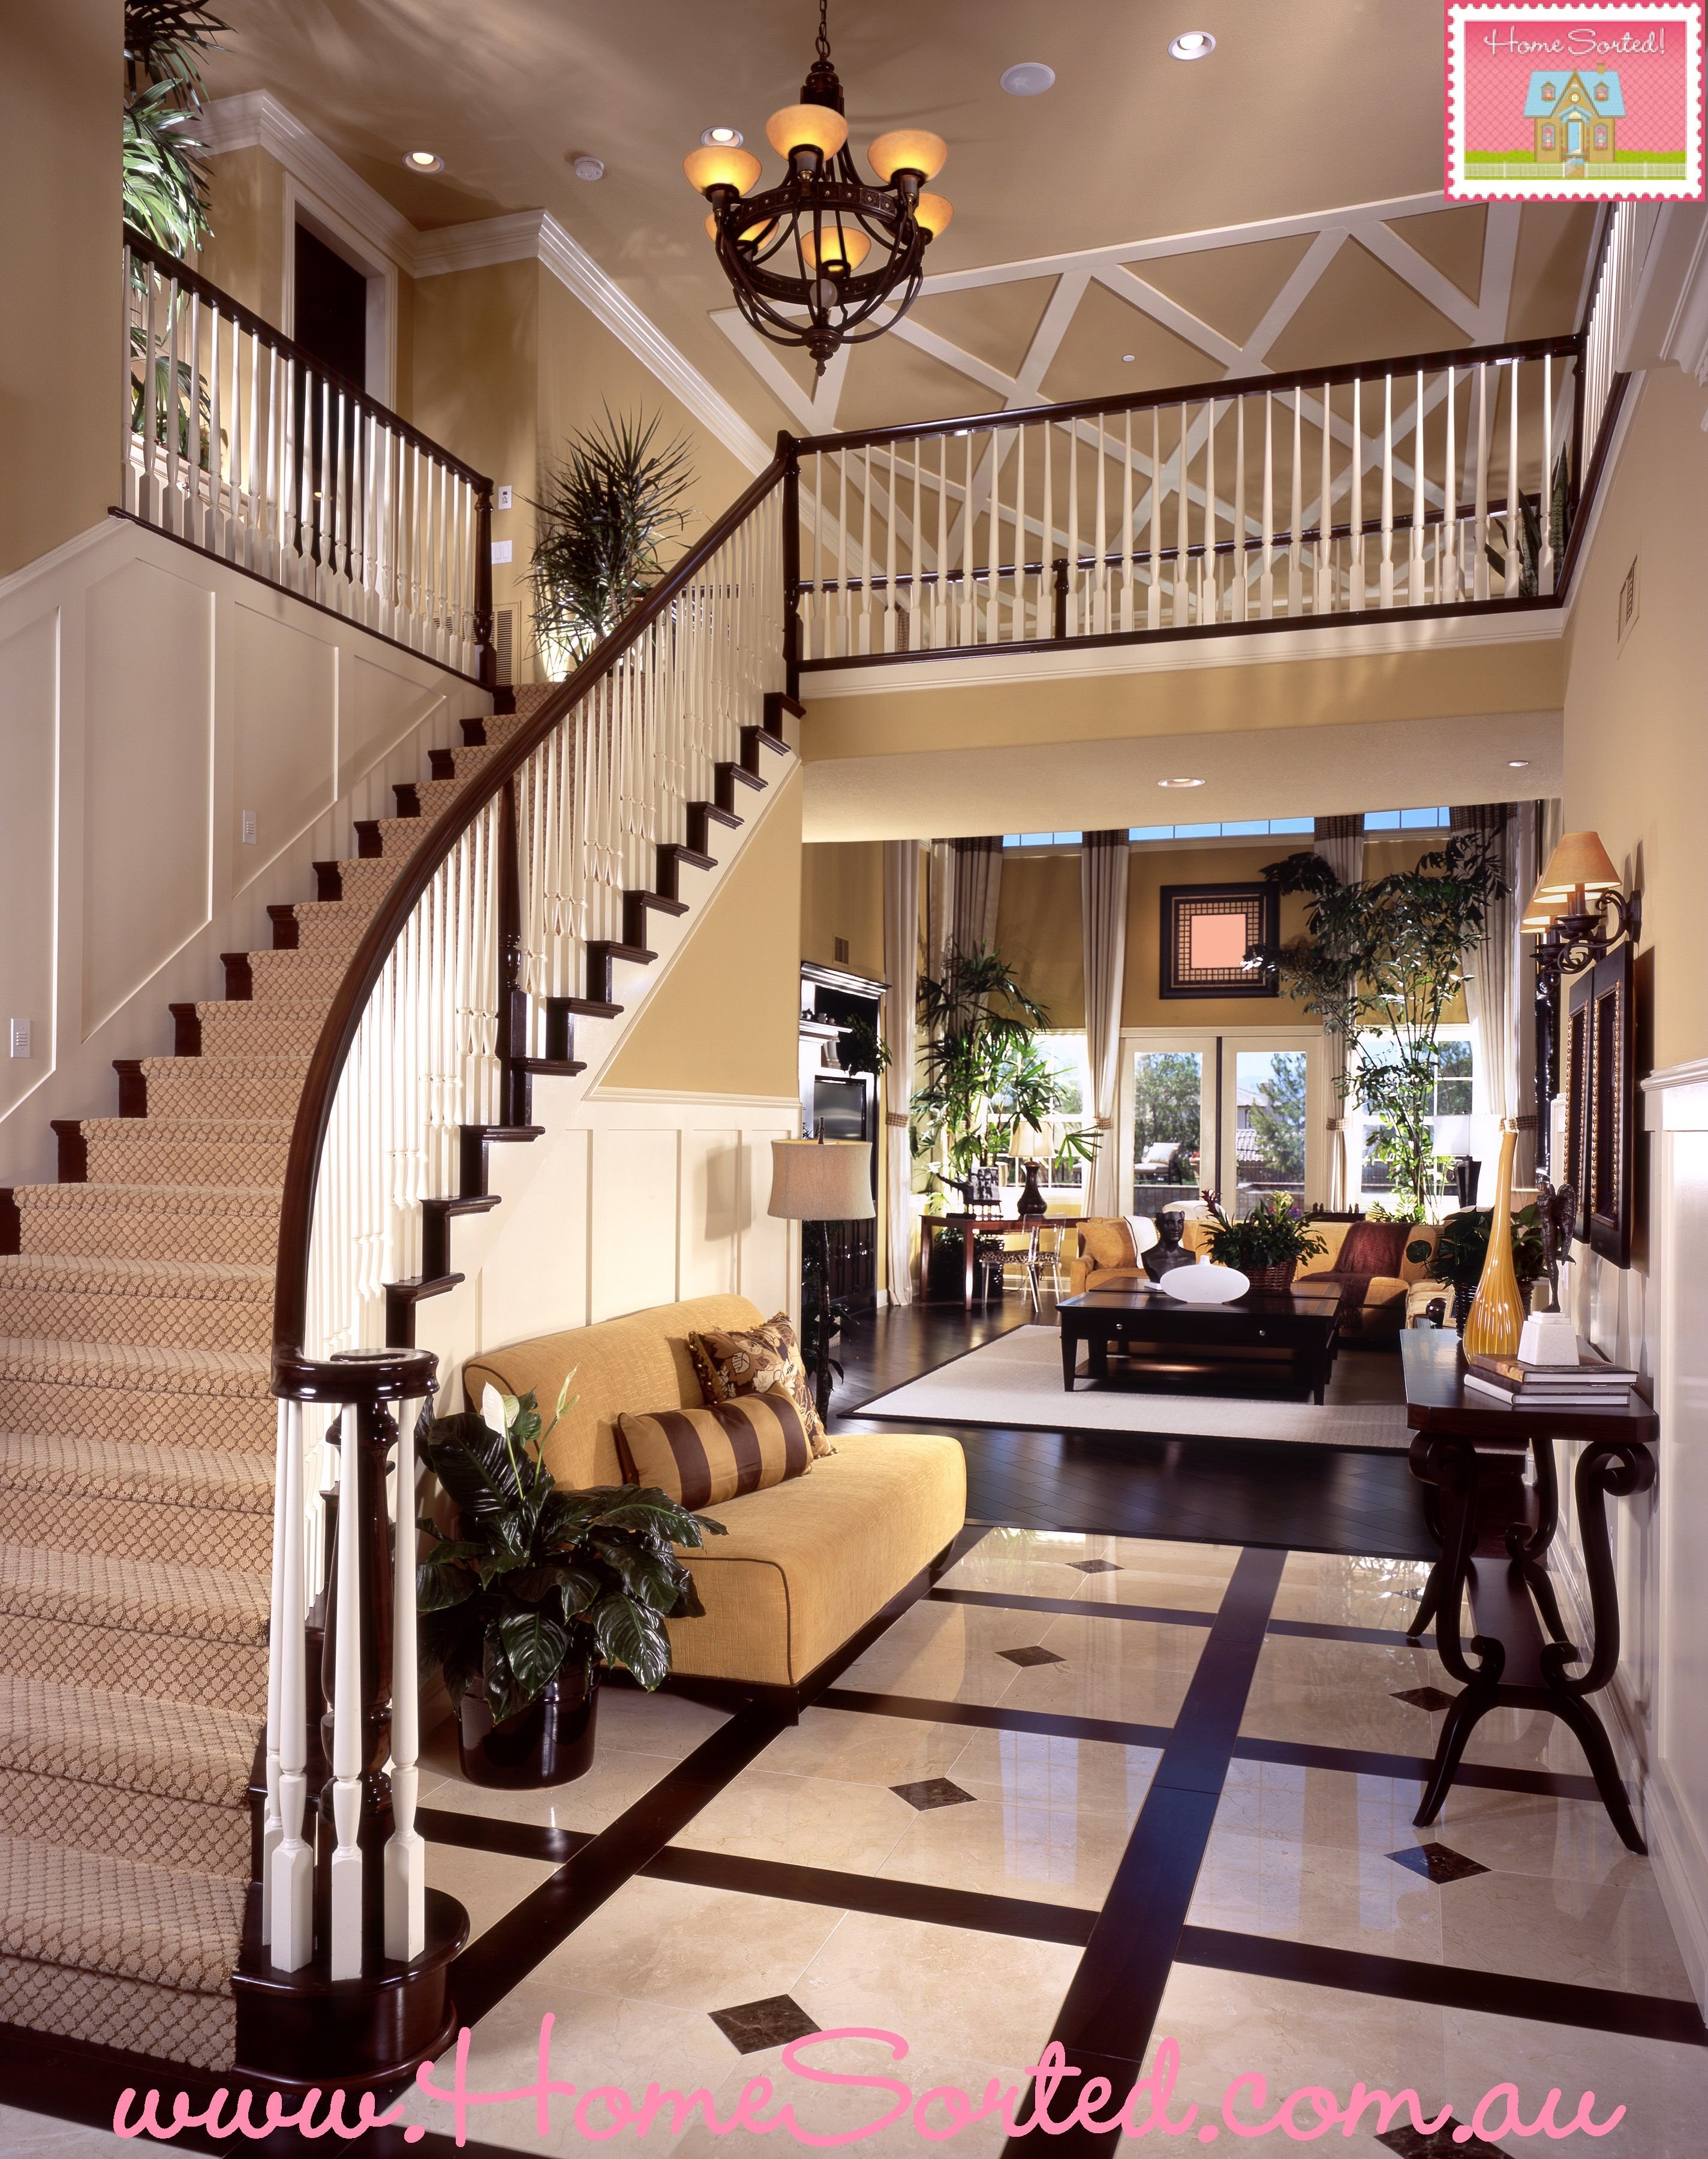 Куда холла. Гостиная с лестницей. Лестница в интерьере. Красивые интерьеры домов. Красивые гостиные с лестницей.